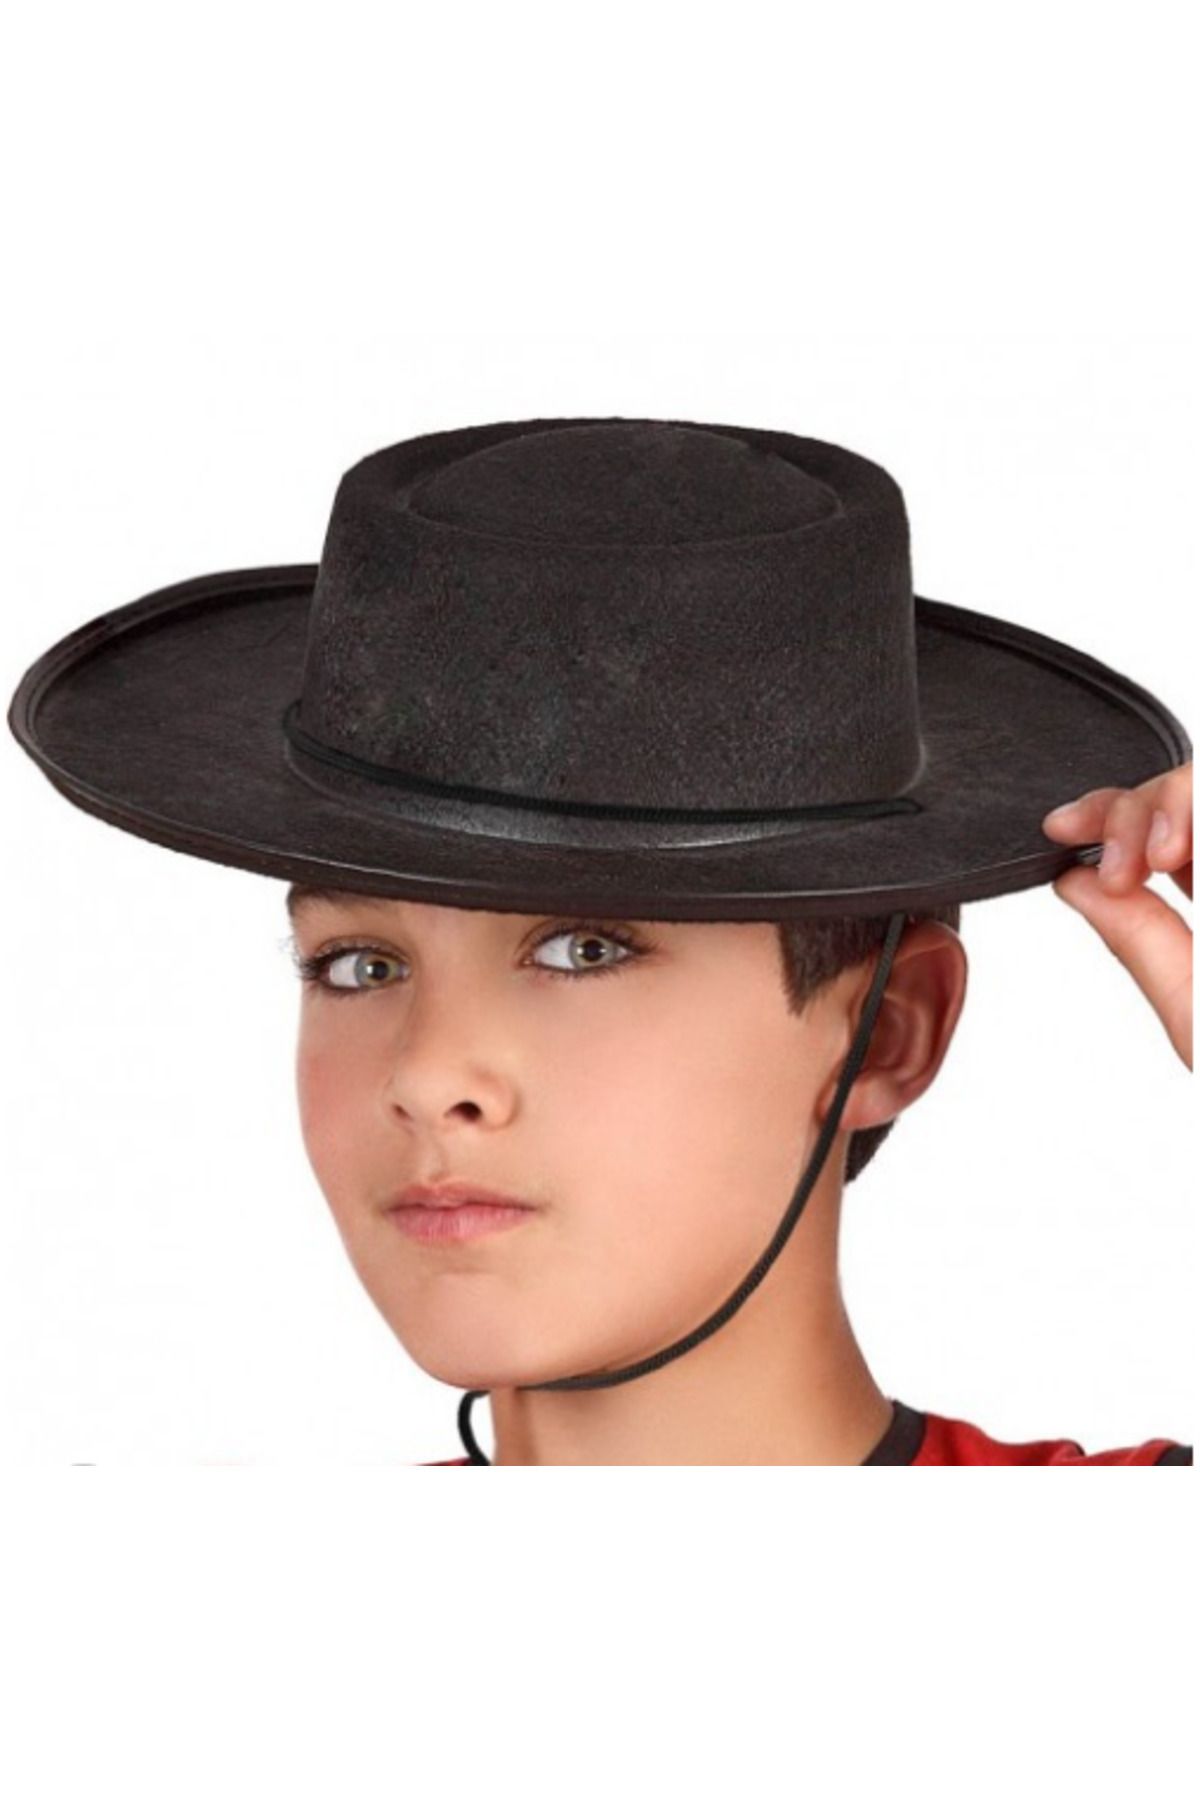 Kirveaksesuar CLZ192 Siyah Renk Keçe Flamenko Şapkası Çocuk Boy (4172)